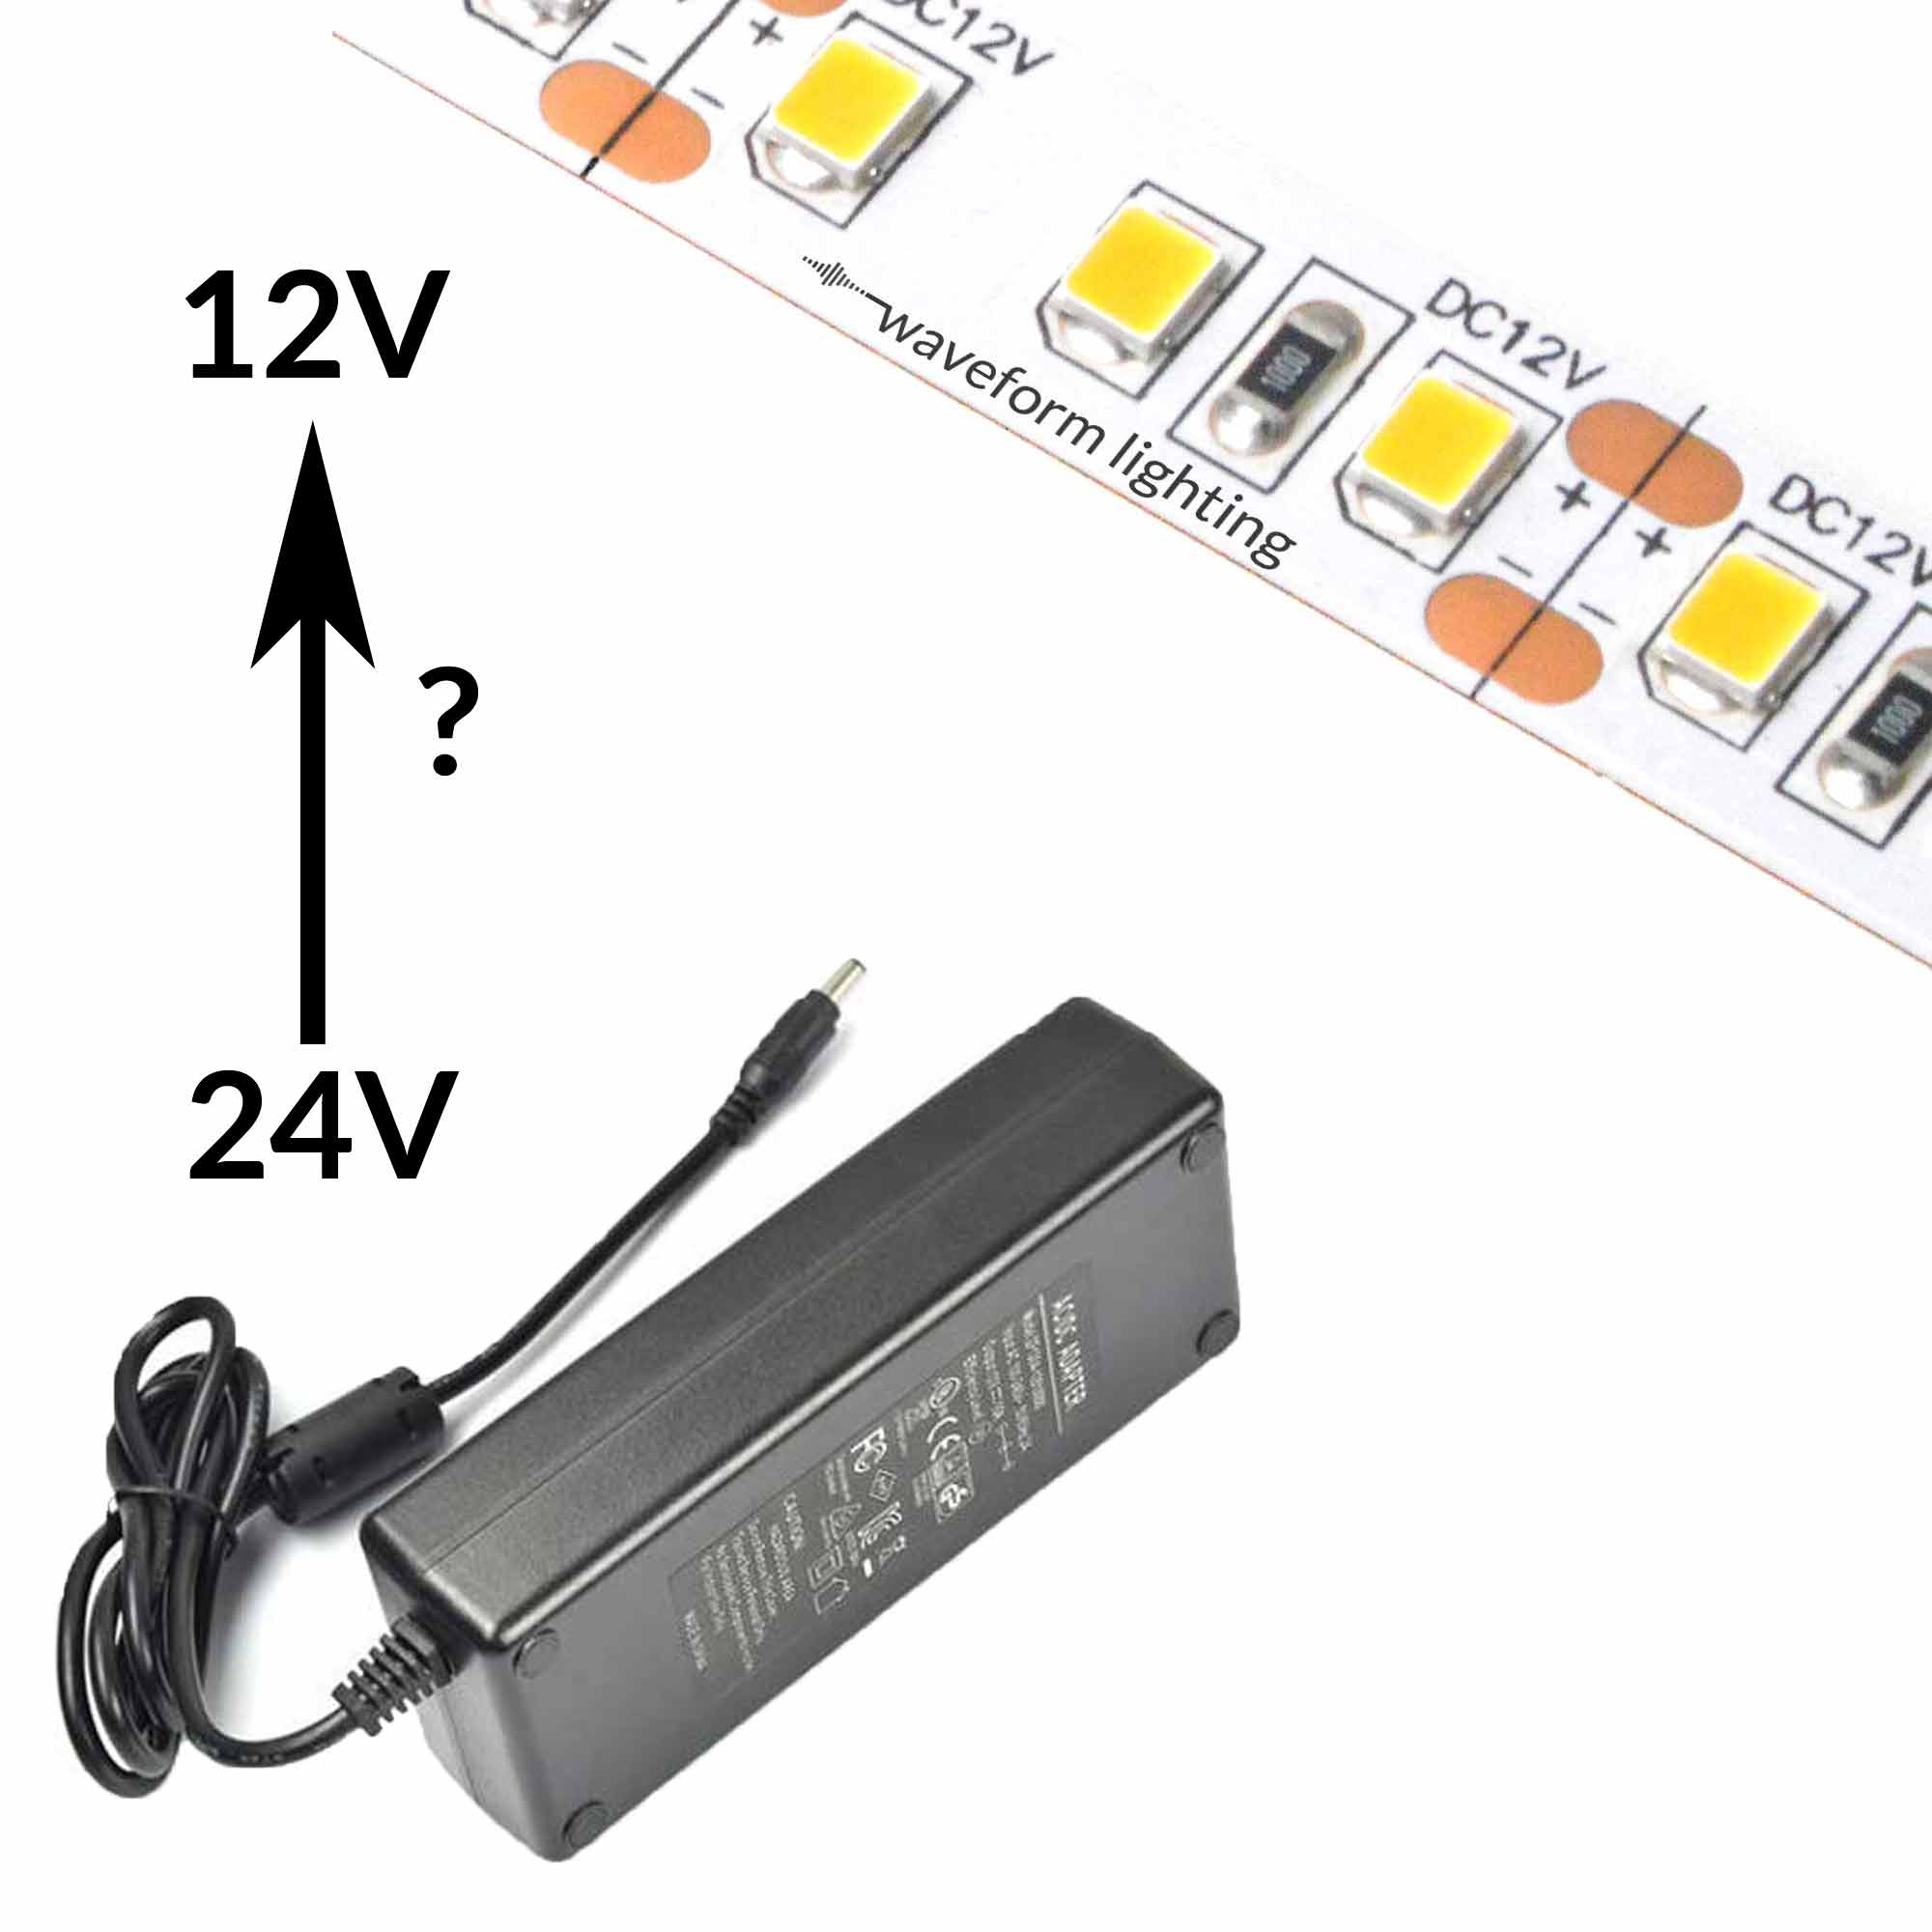 a 12V LED a 24V System | Waveform Lighting